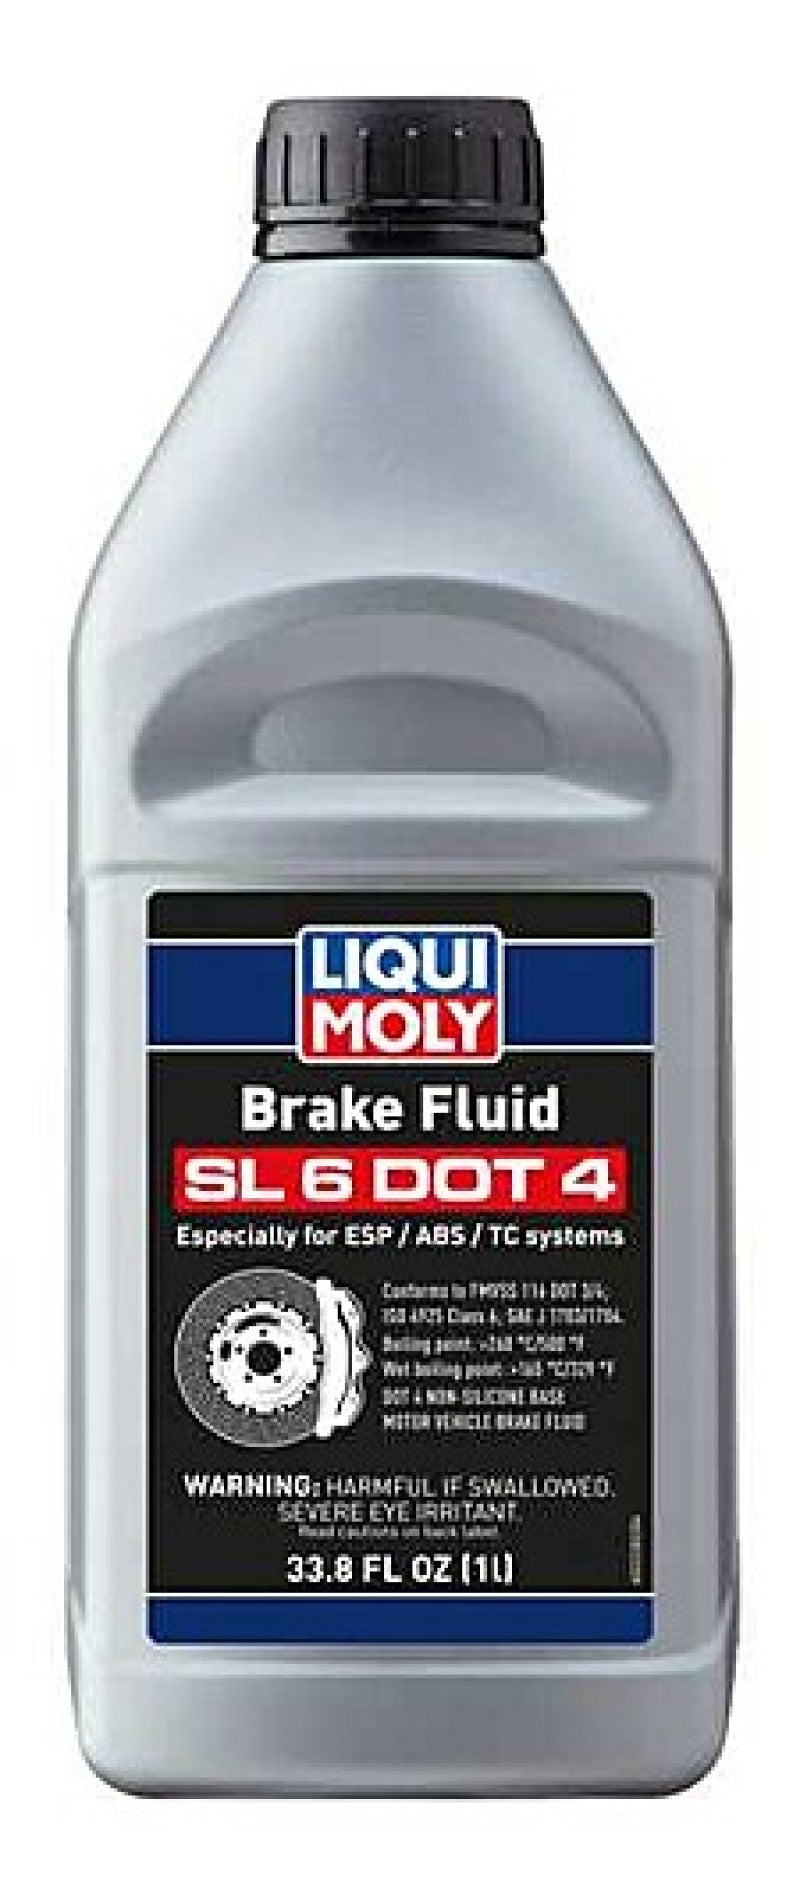 LIQUI MOLY 1L Brake Fluid SL6 DOT 4.